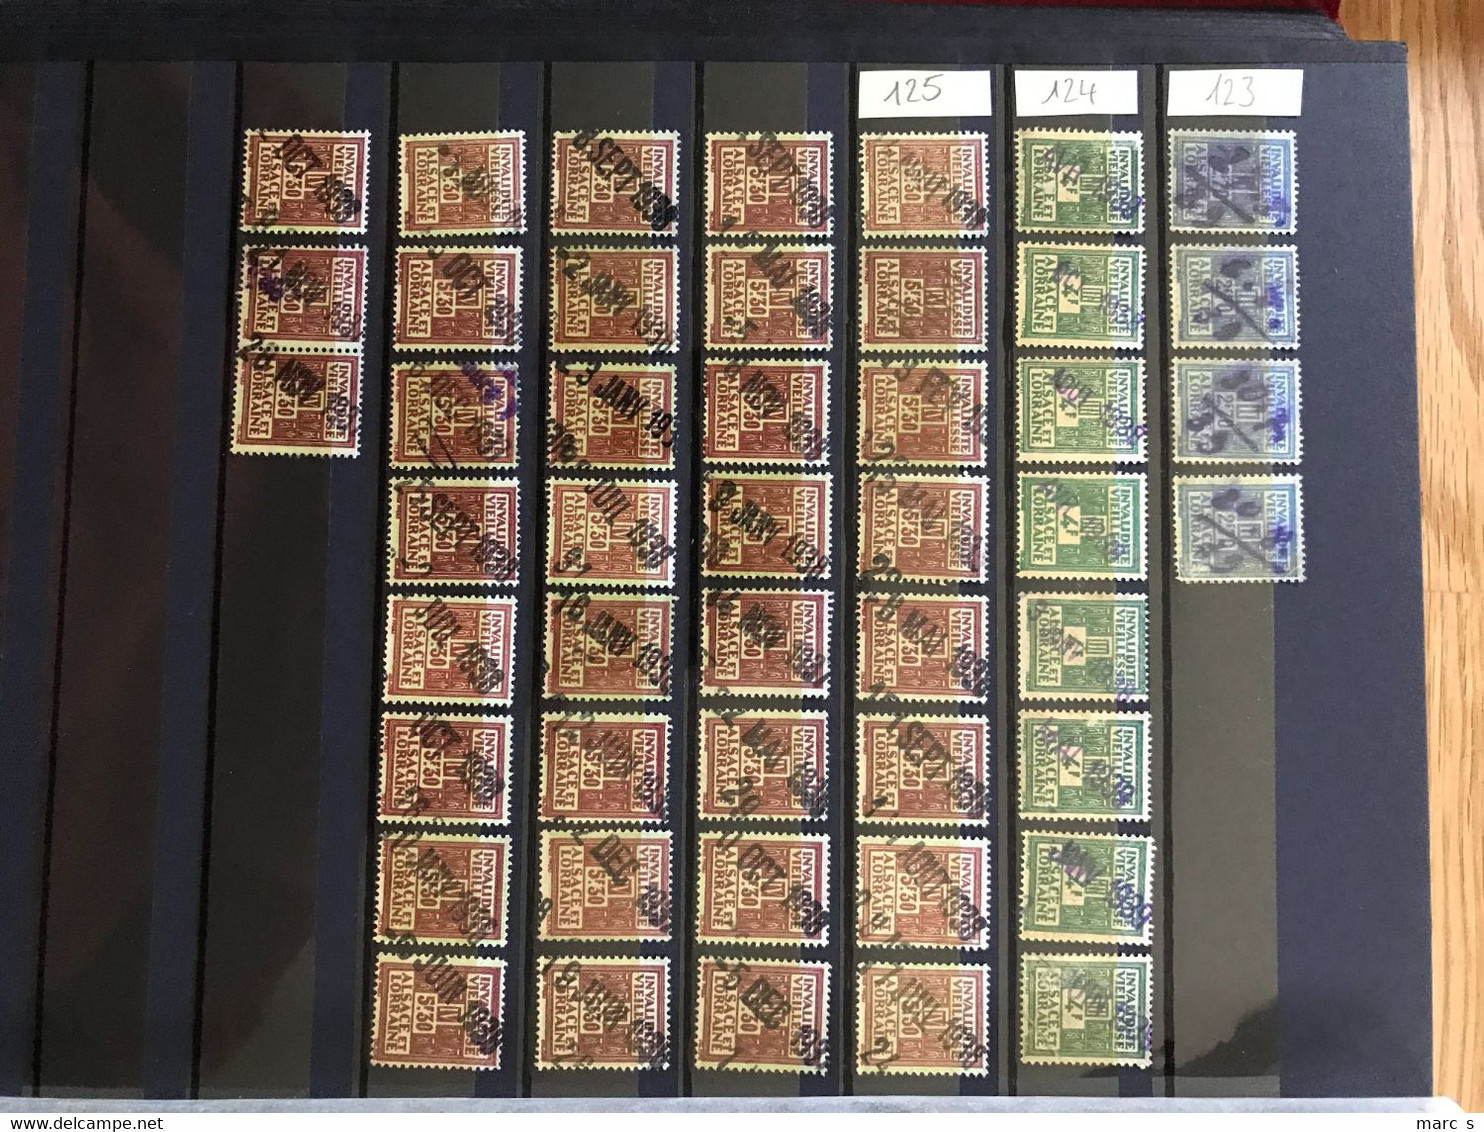 COLLECTION - SOCIO POSTAUX ALSACE LORRAINE 1891 - près de 1.000 timbres classés